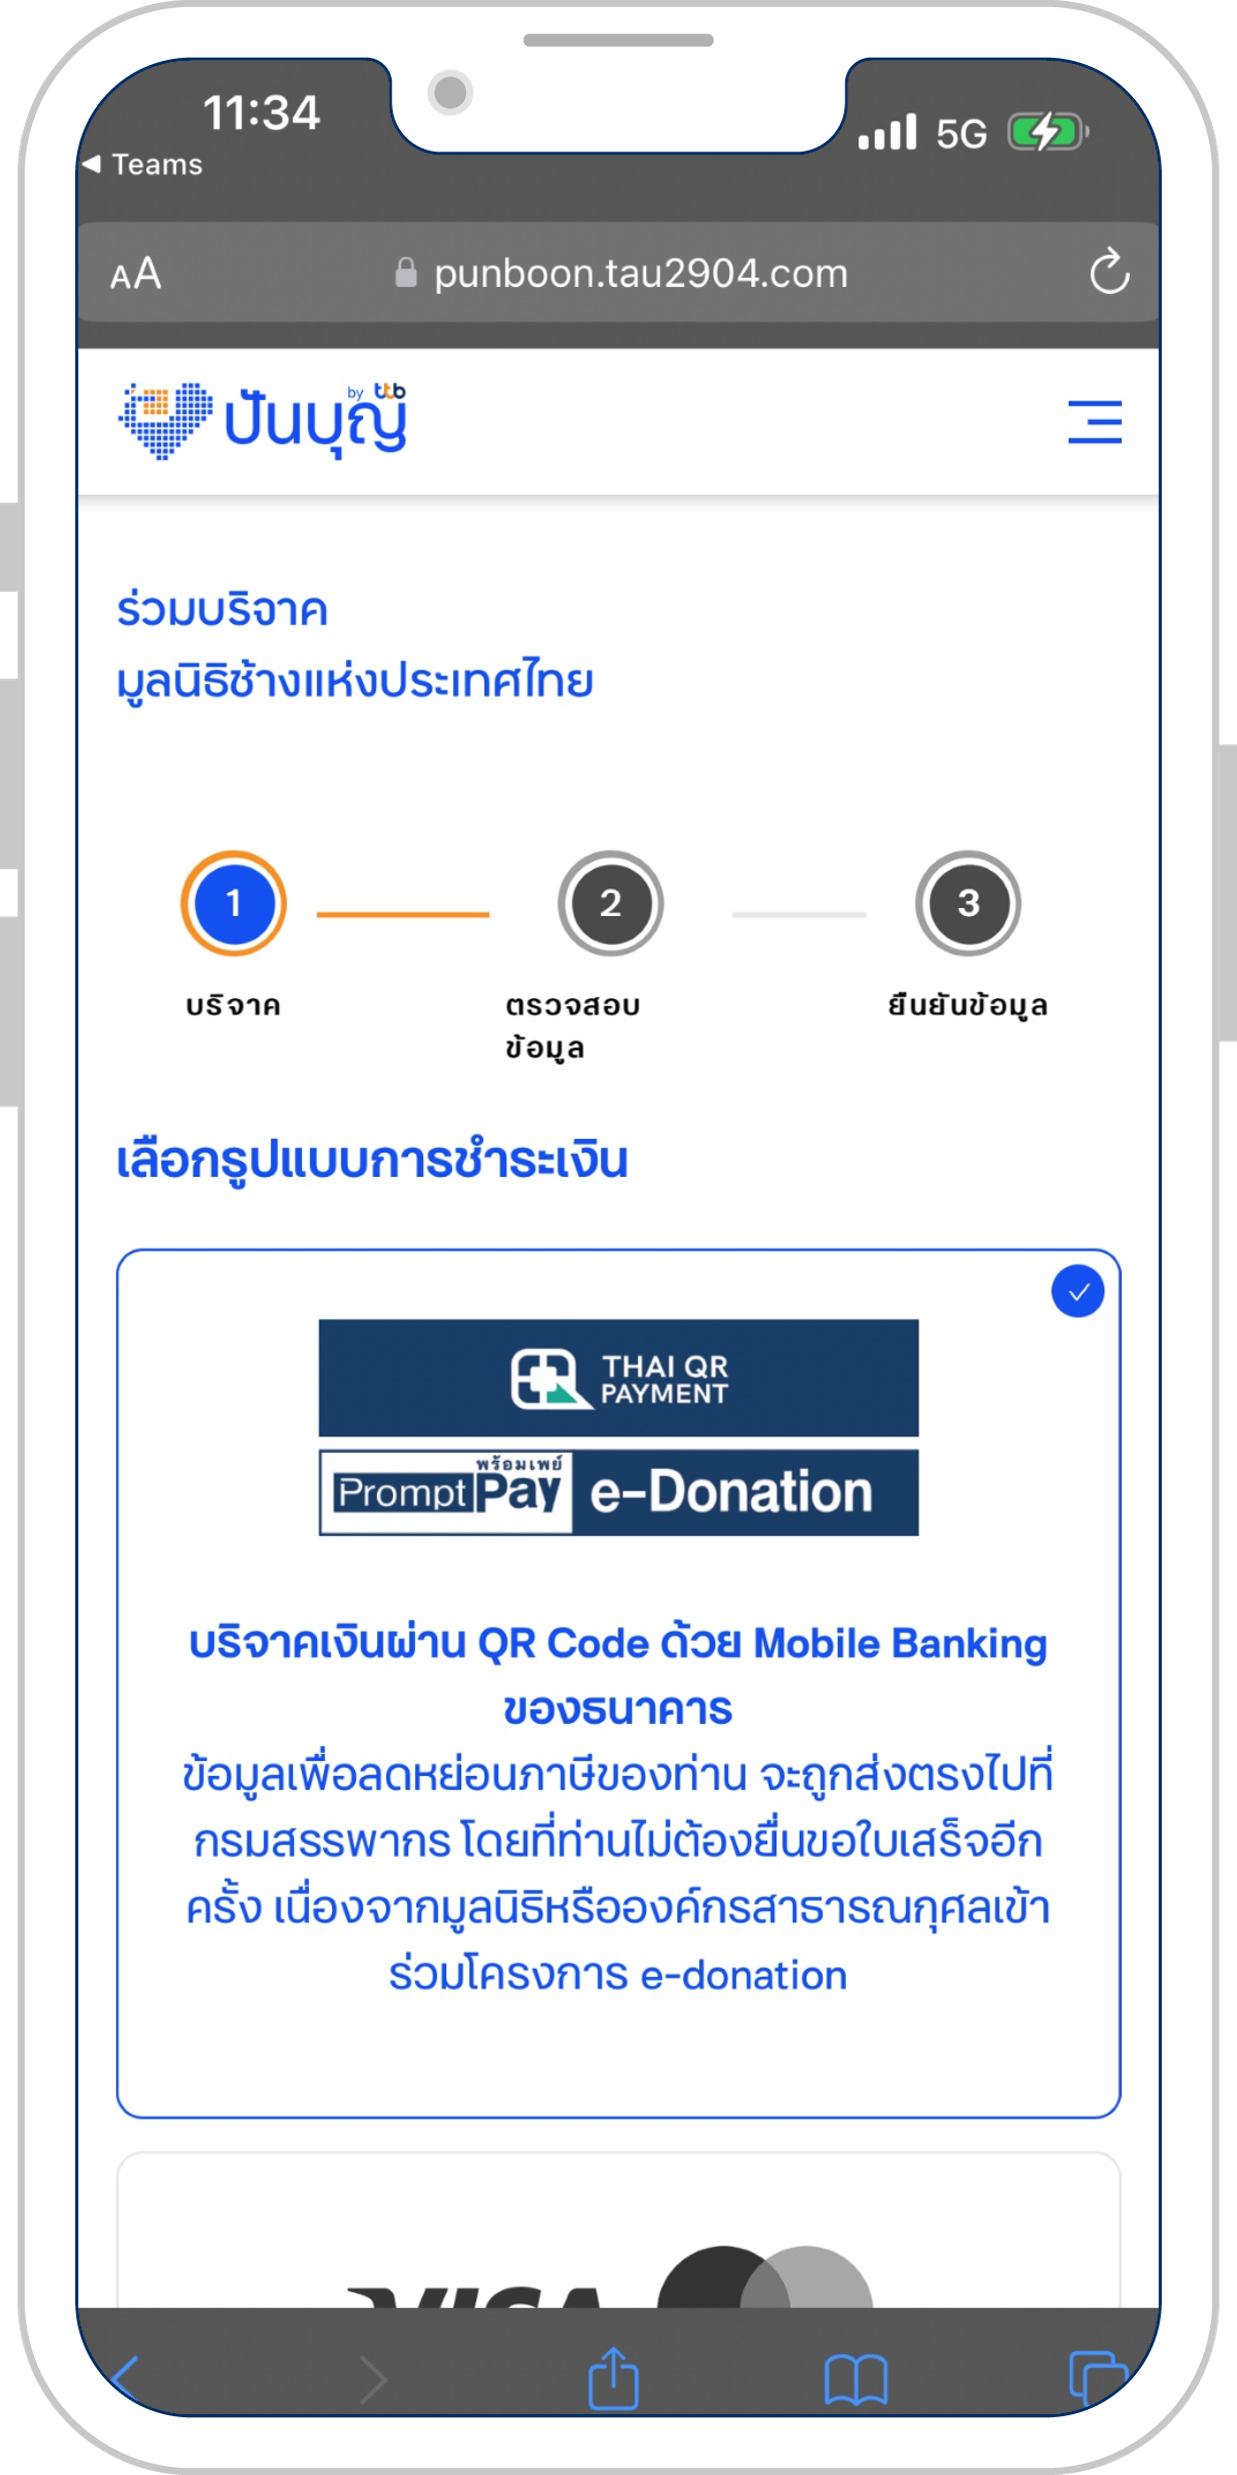 ลูกค้าทำรายการบริจาคมาจากเว็บปันบุญ โดยเลือกรูปแบบการชำระเงินผ่าน Mobile Banking ของธนาคาร